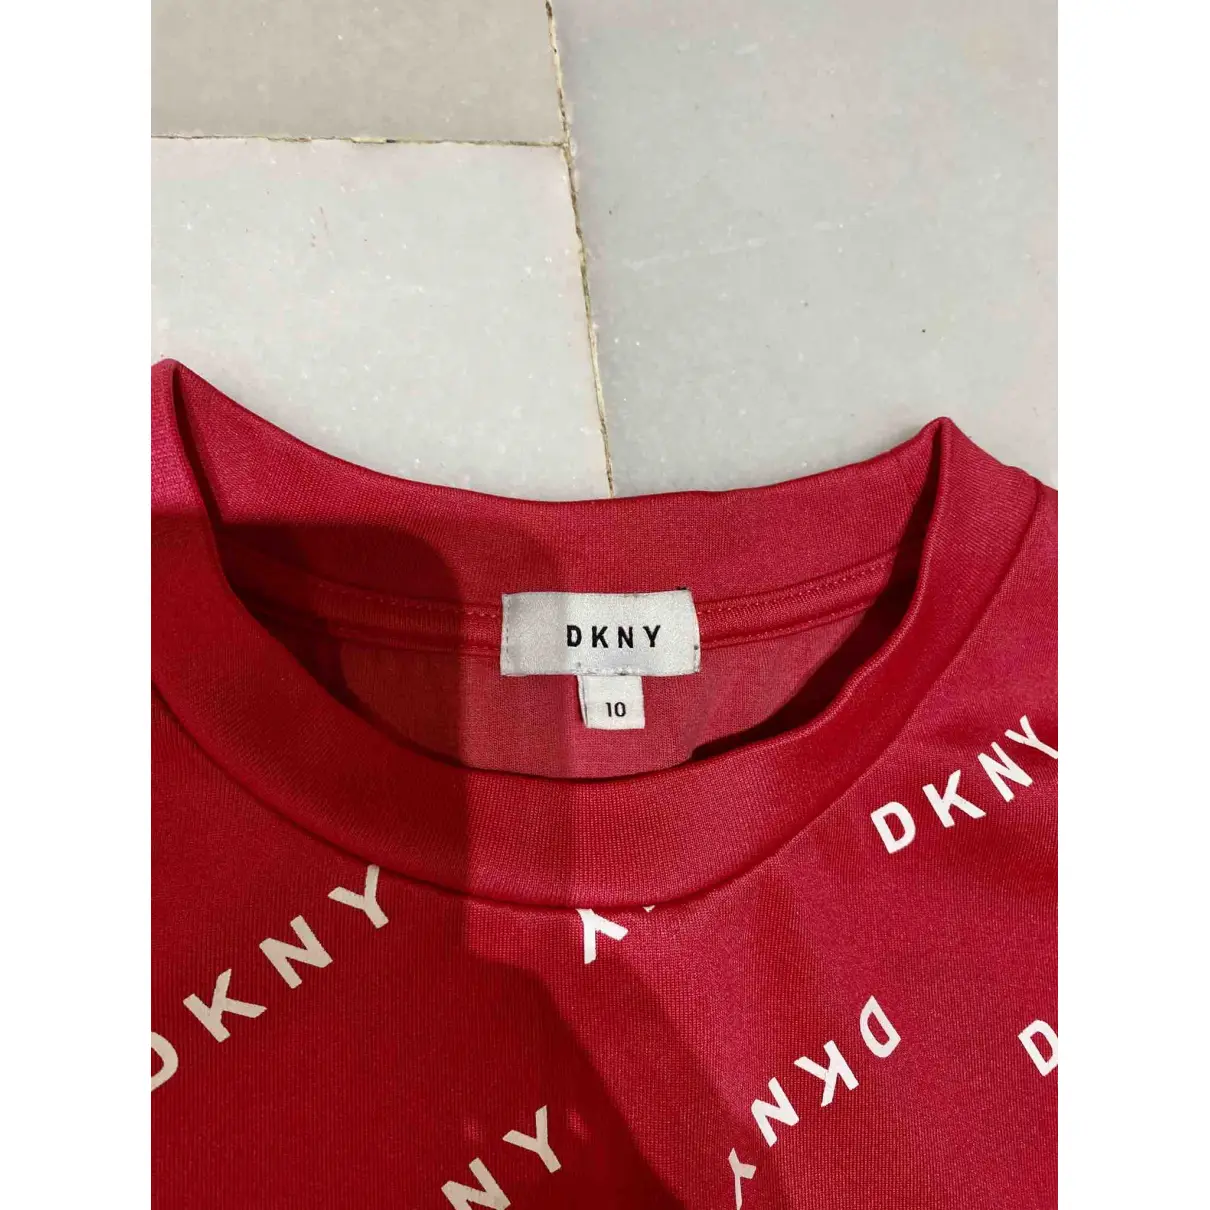 Buy Dkny Knitwear online